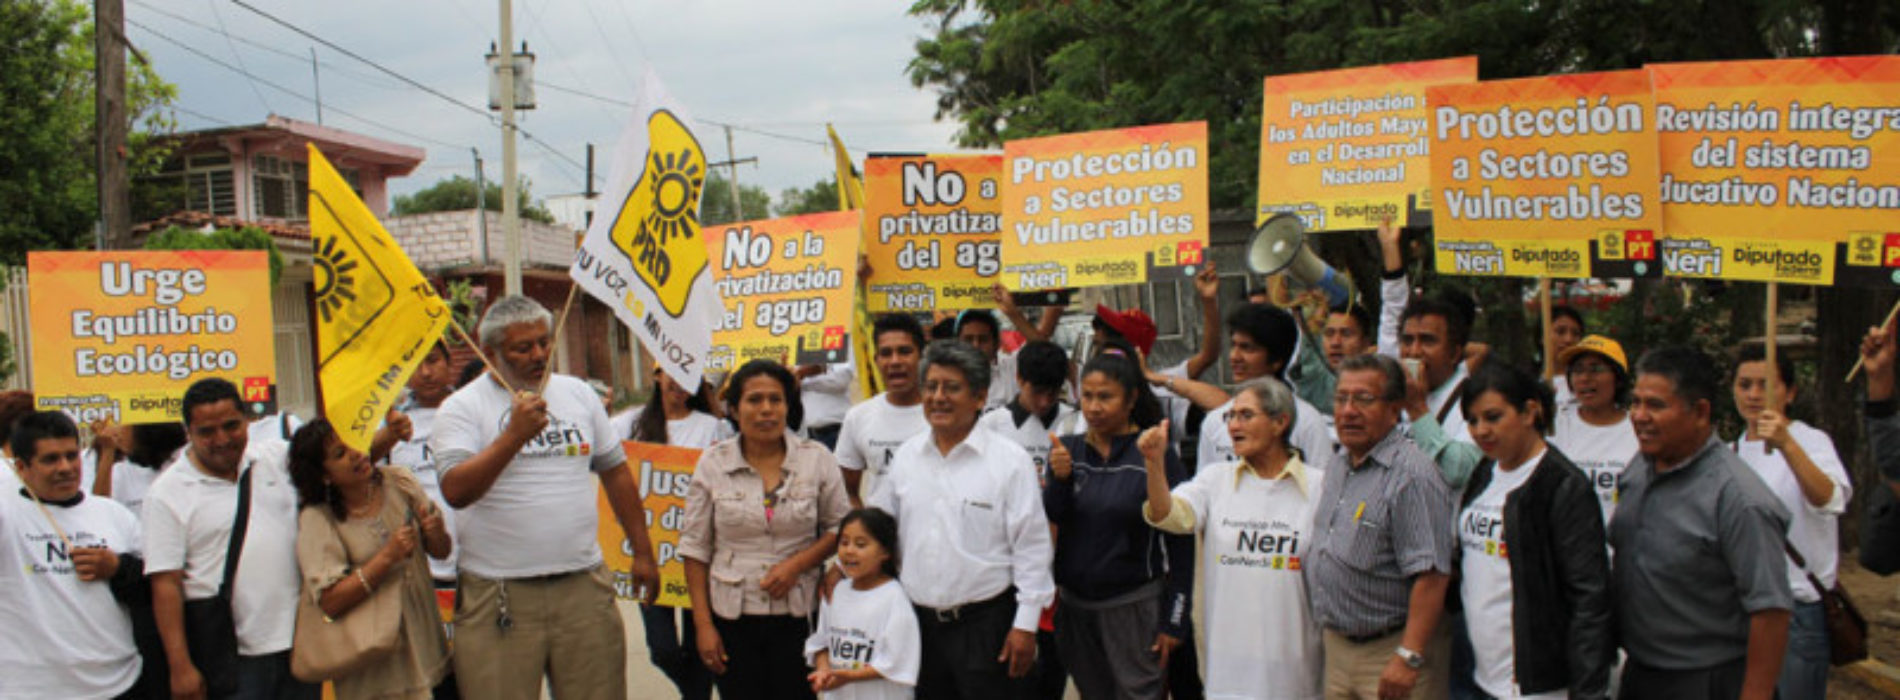 #Oaxaca @fmartinezneri Visita Francisco Martínez Neri fraccionamiento INDECO en Xoxocotlán